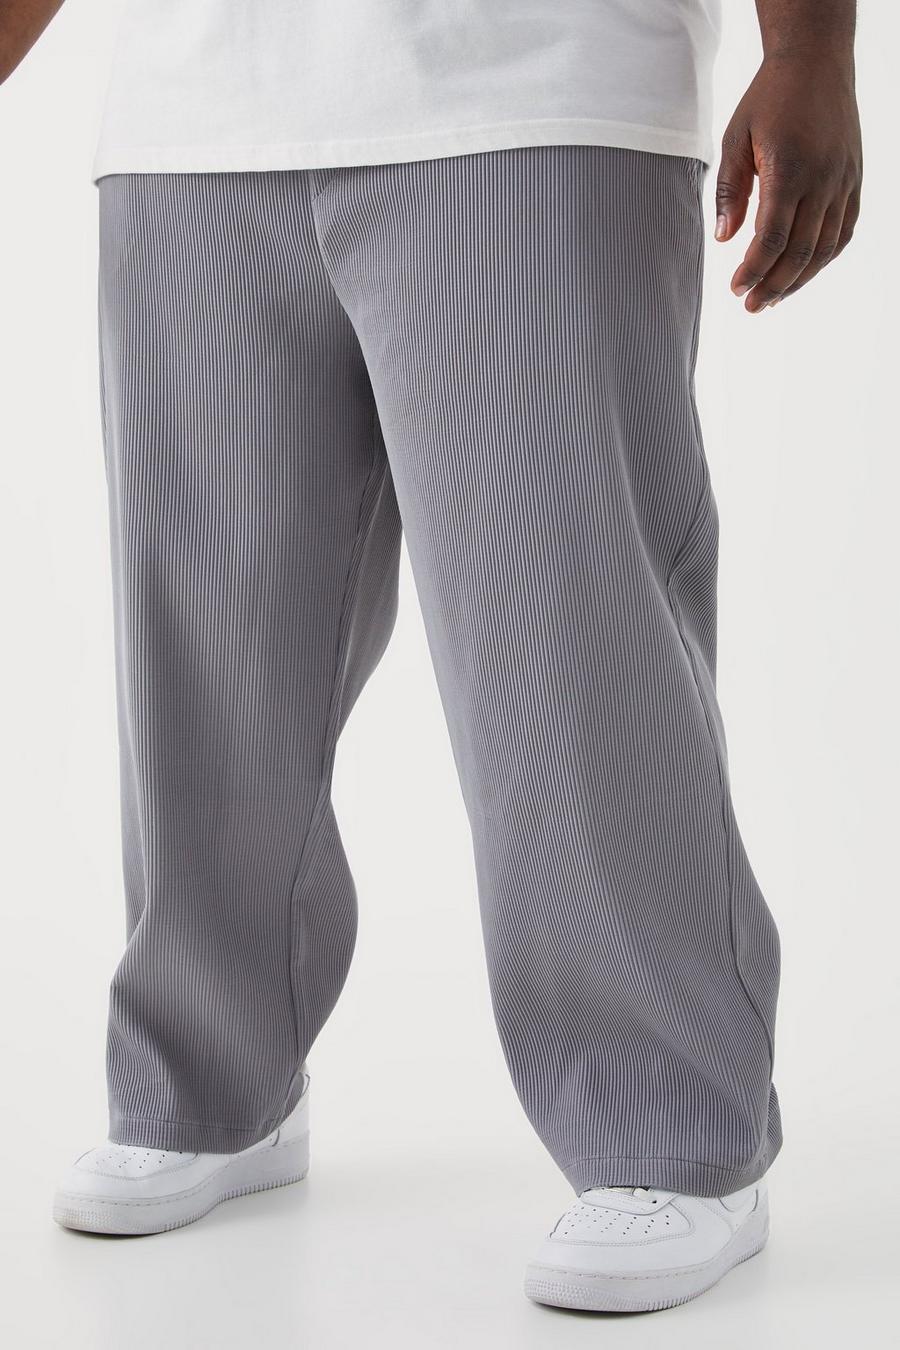 Pantalón Plus holgado plisado con cintura elástica, Charcoal gris